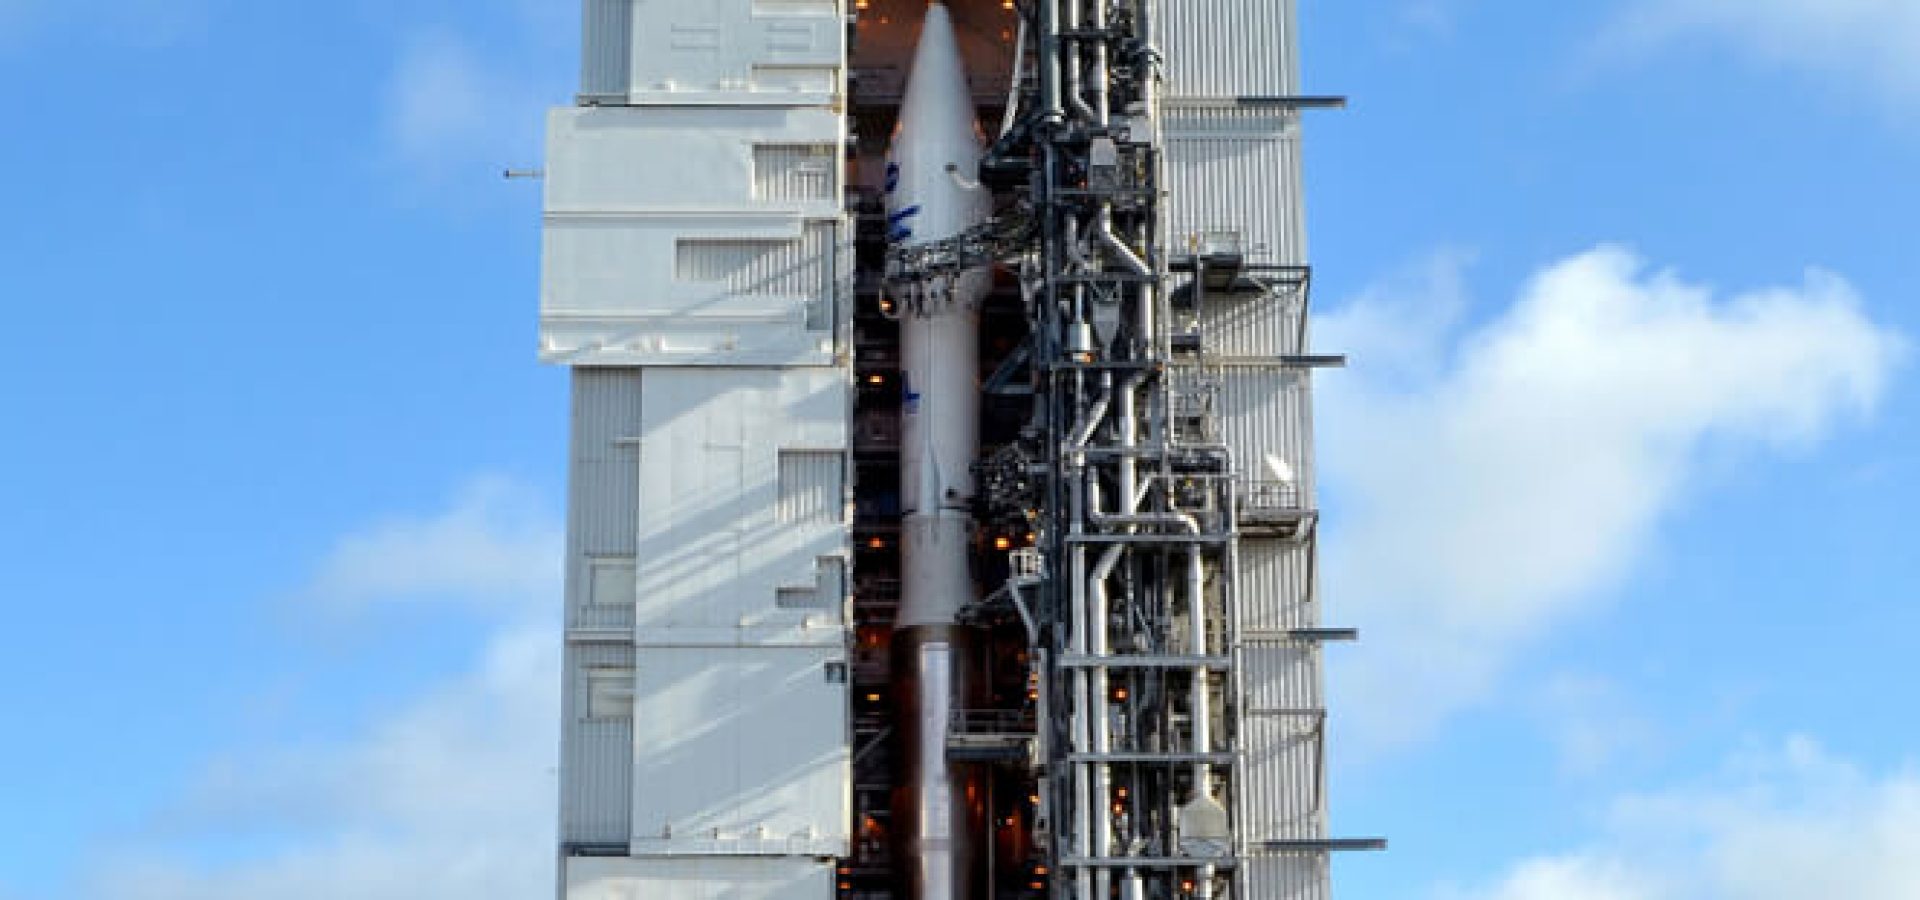 An Atlas V rocket carrying the Landsat 8 satellite